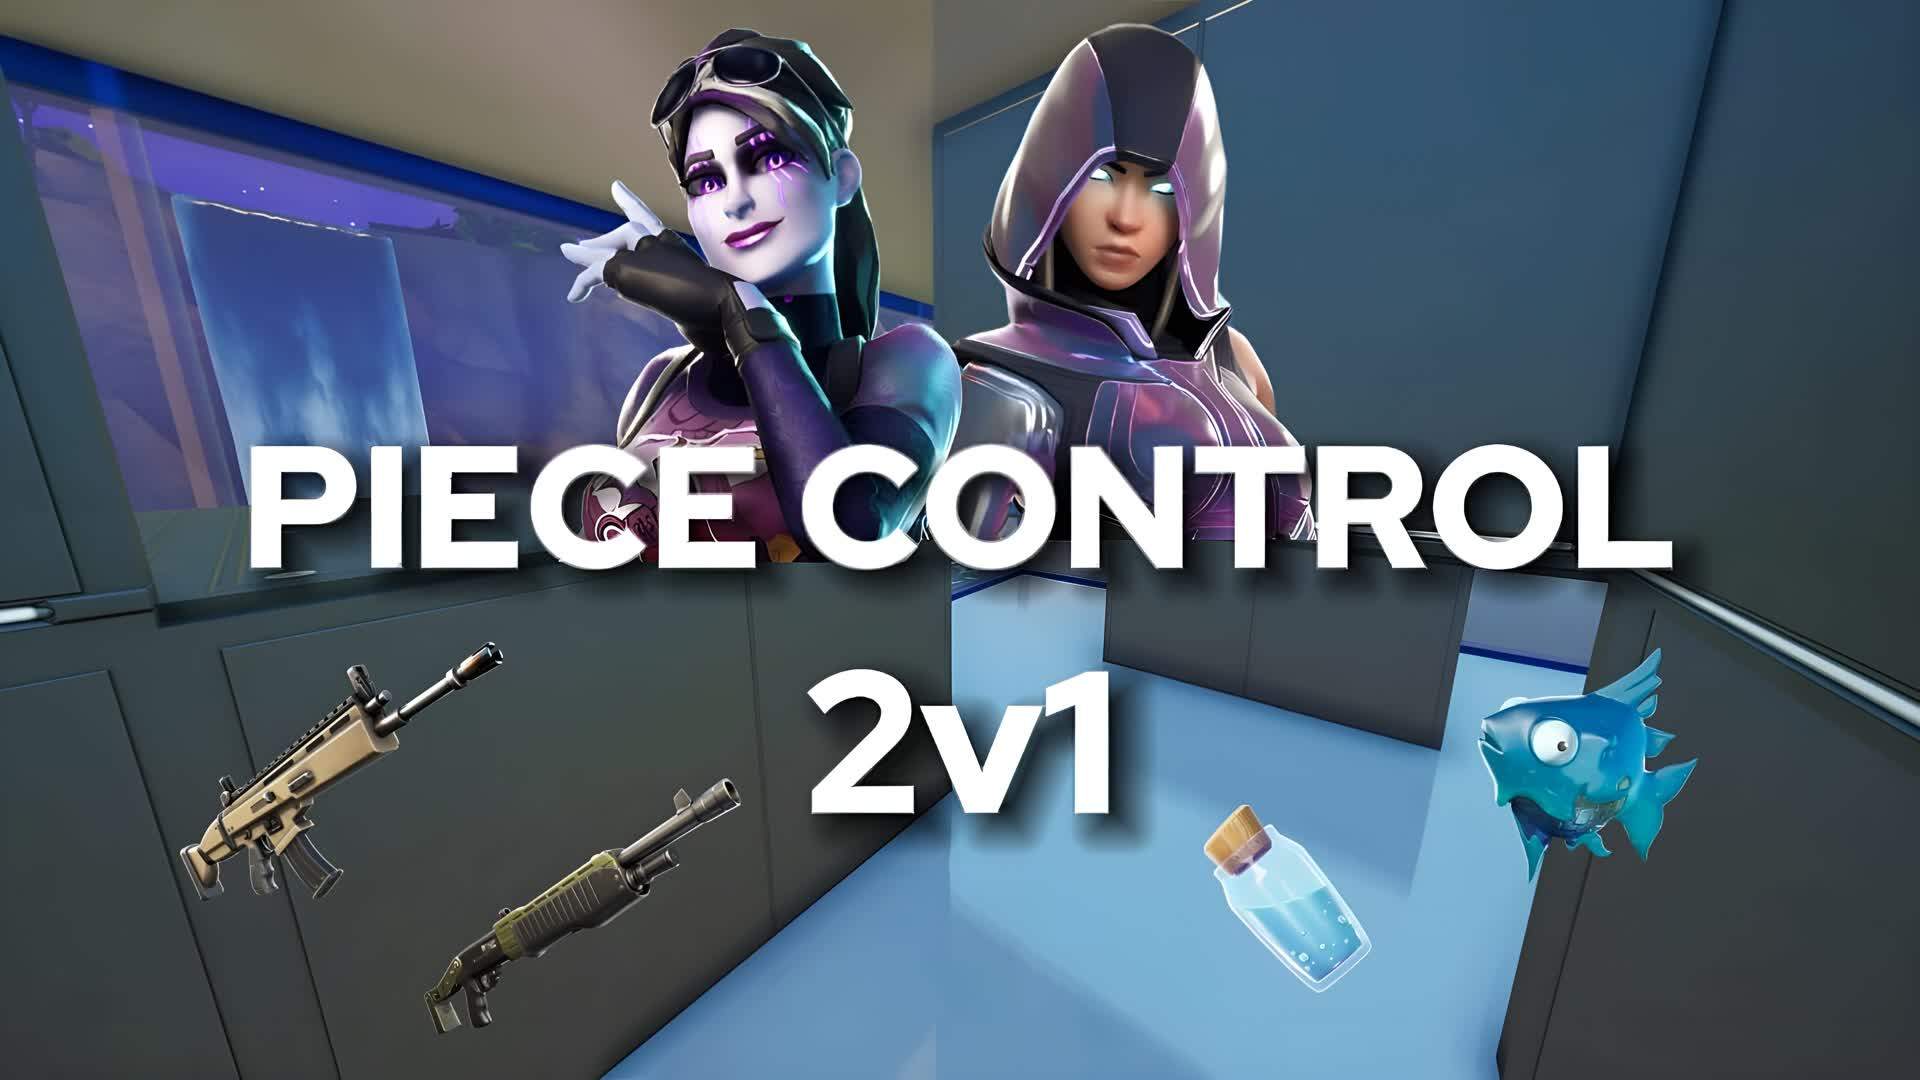 PIECE CONTROL 2V1